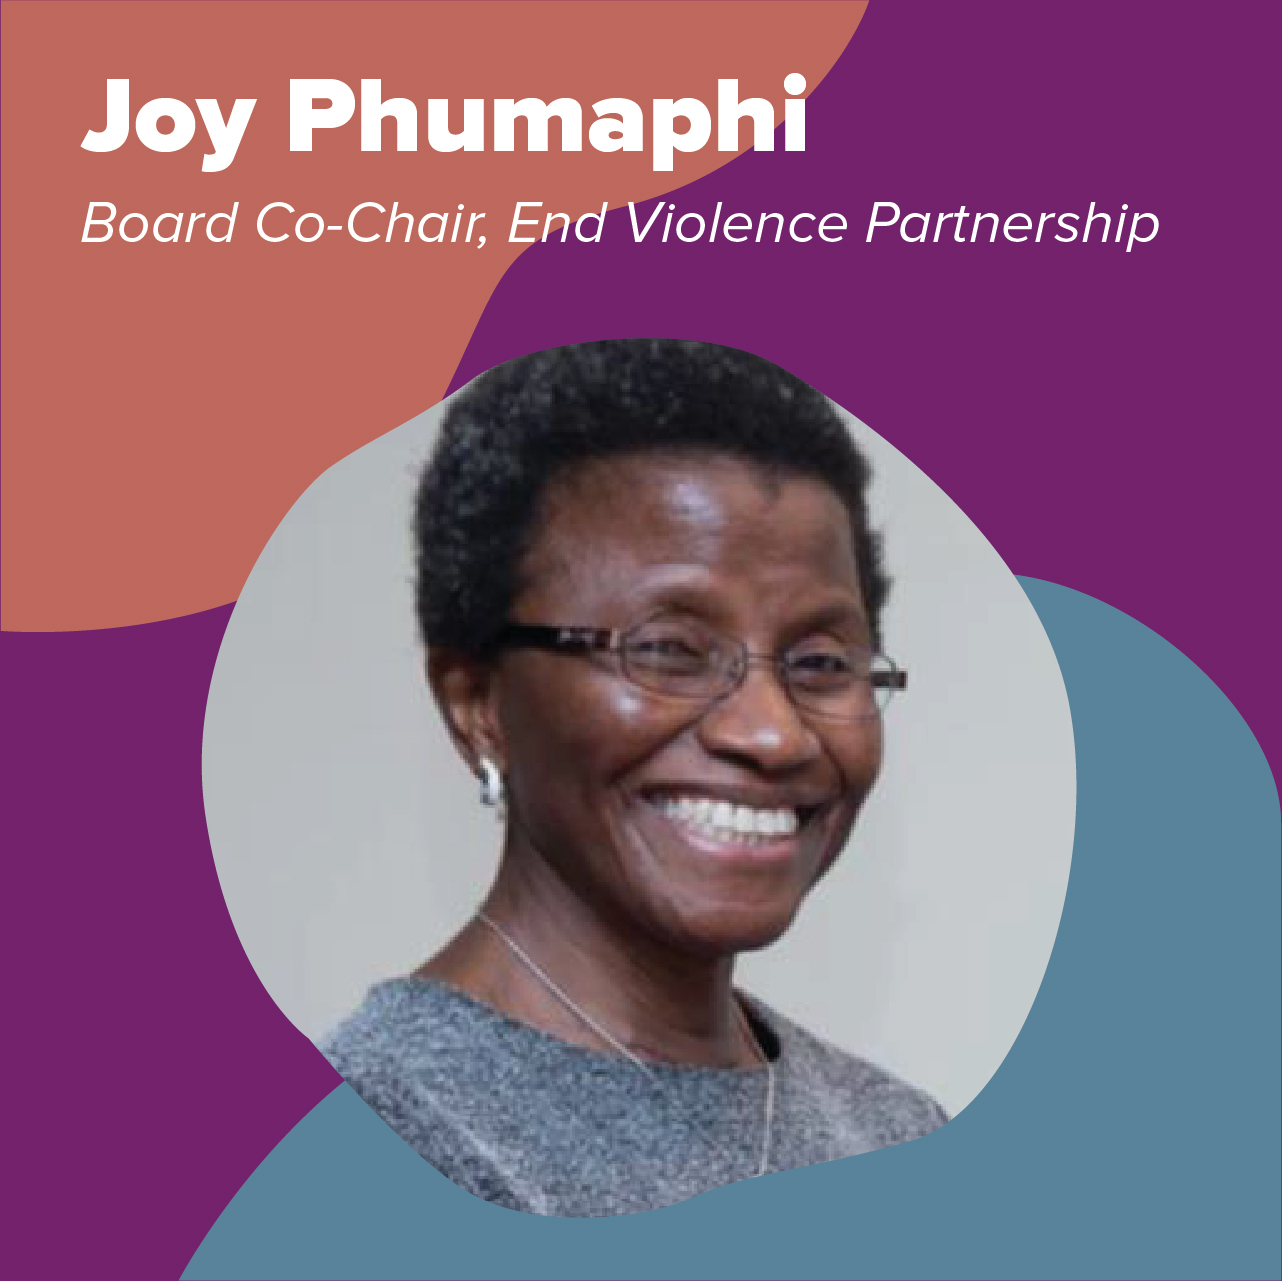 Joy Phumaphi